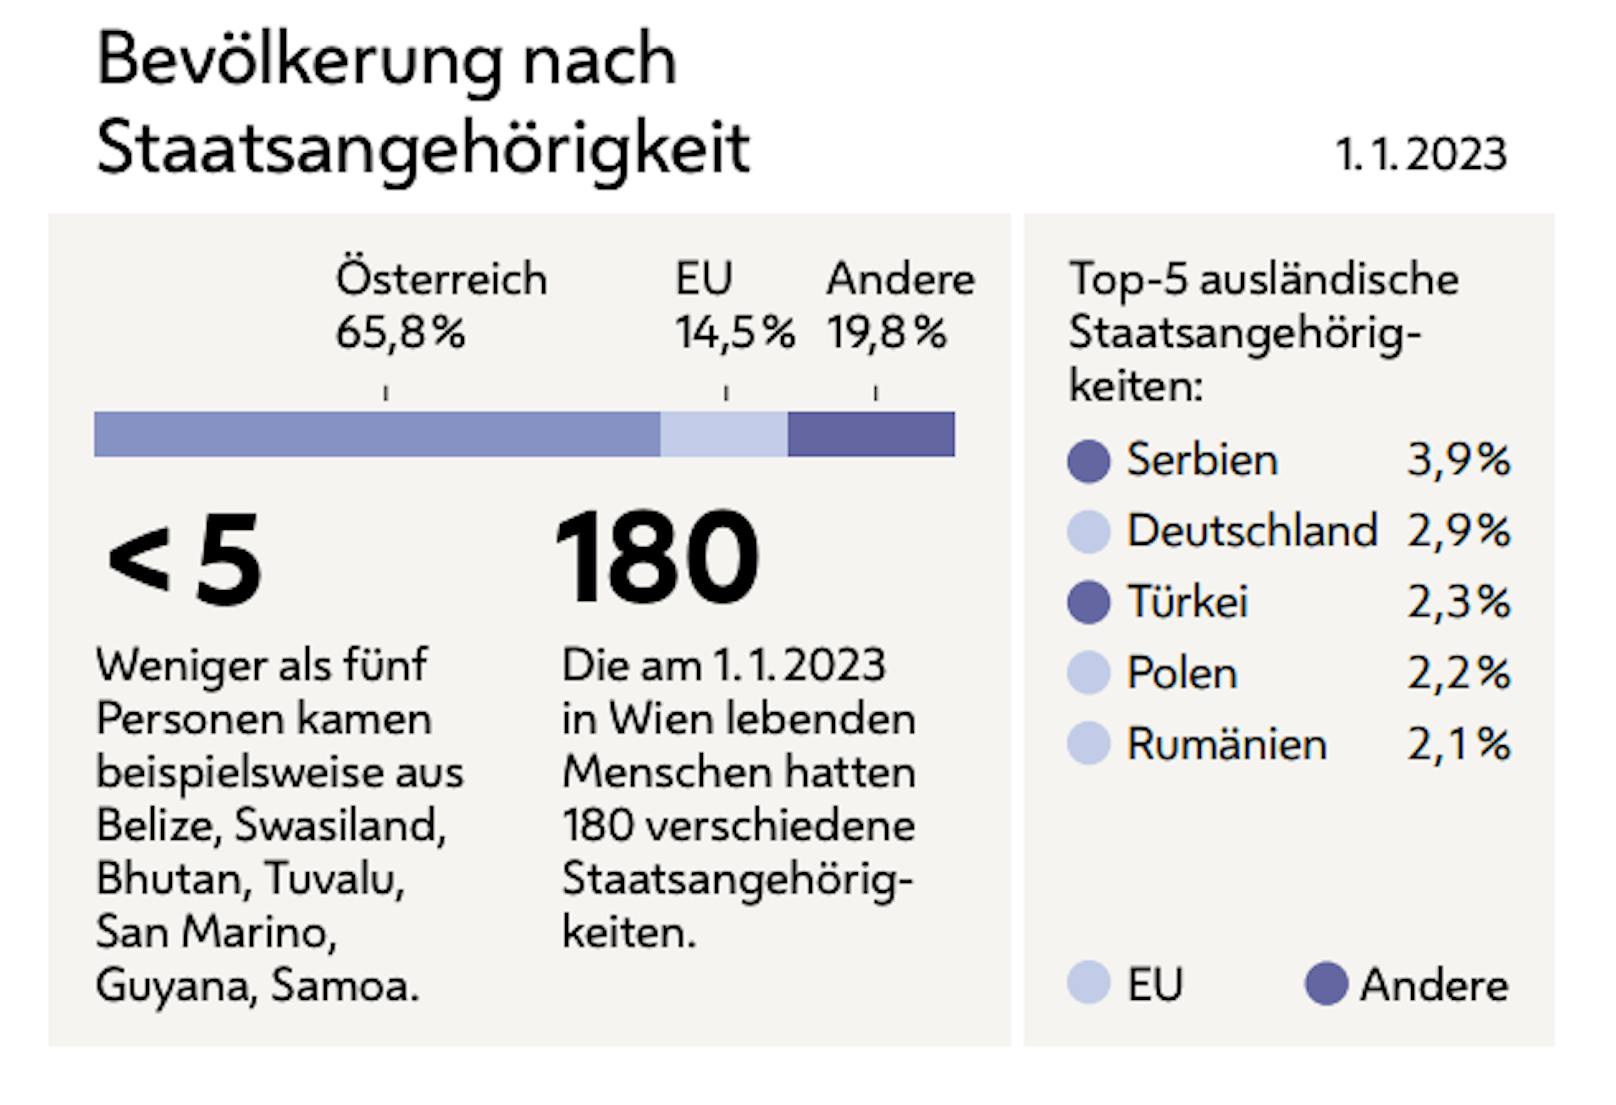 Serben und Deutsche sind die größte Gruppe an Ausländern in Wien